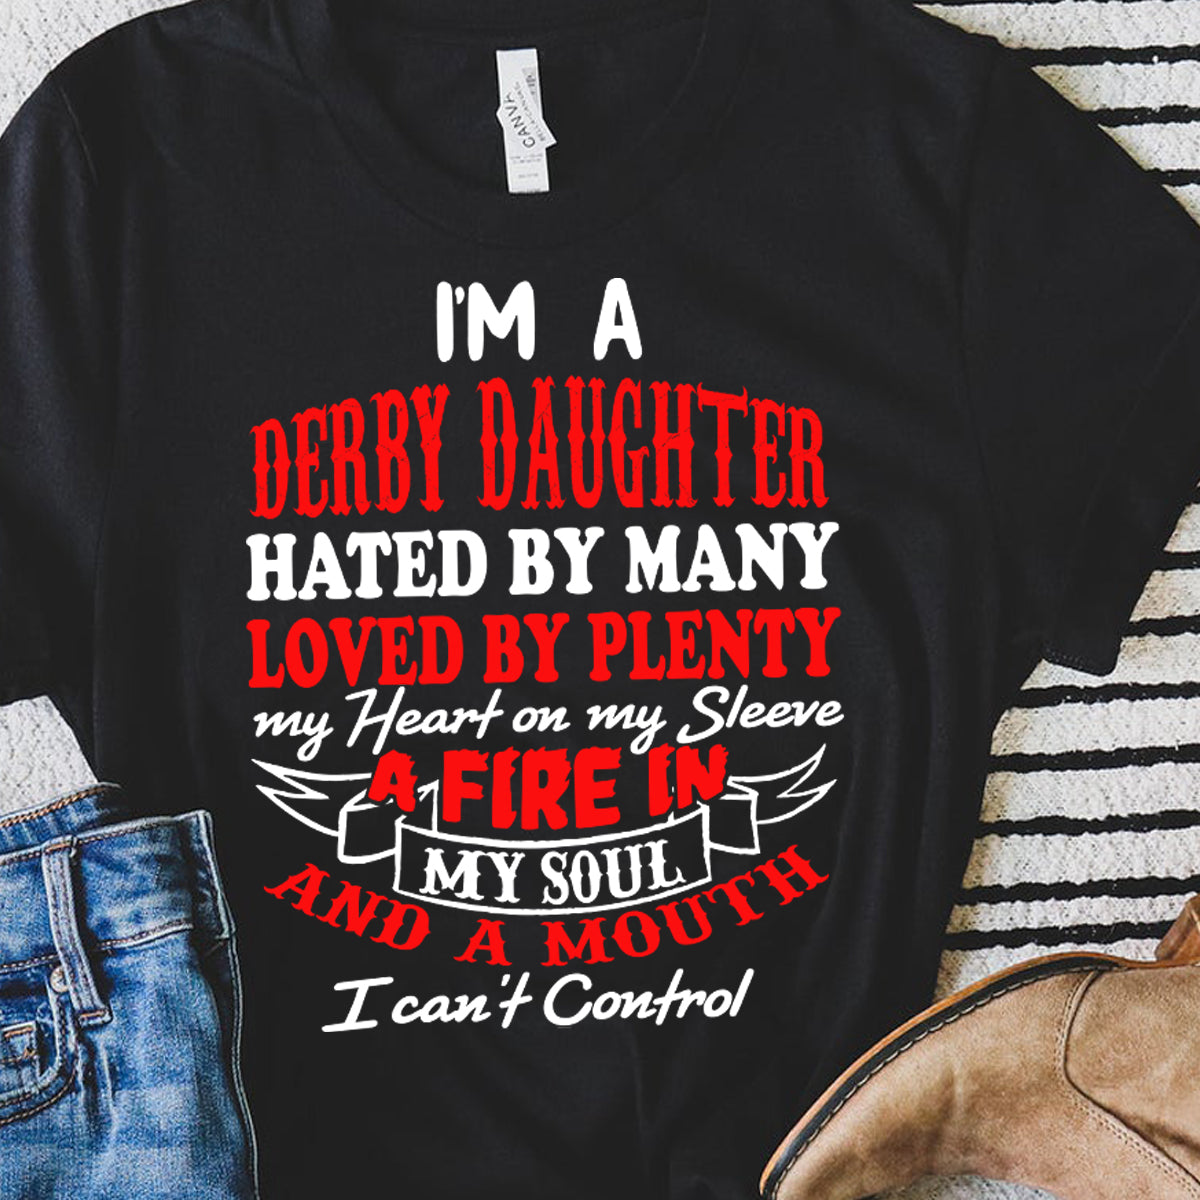 Demolition Derby daughter t-shirts